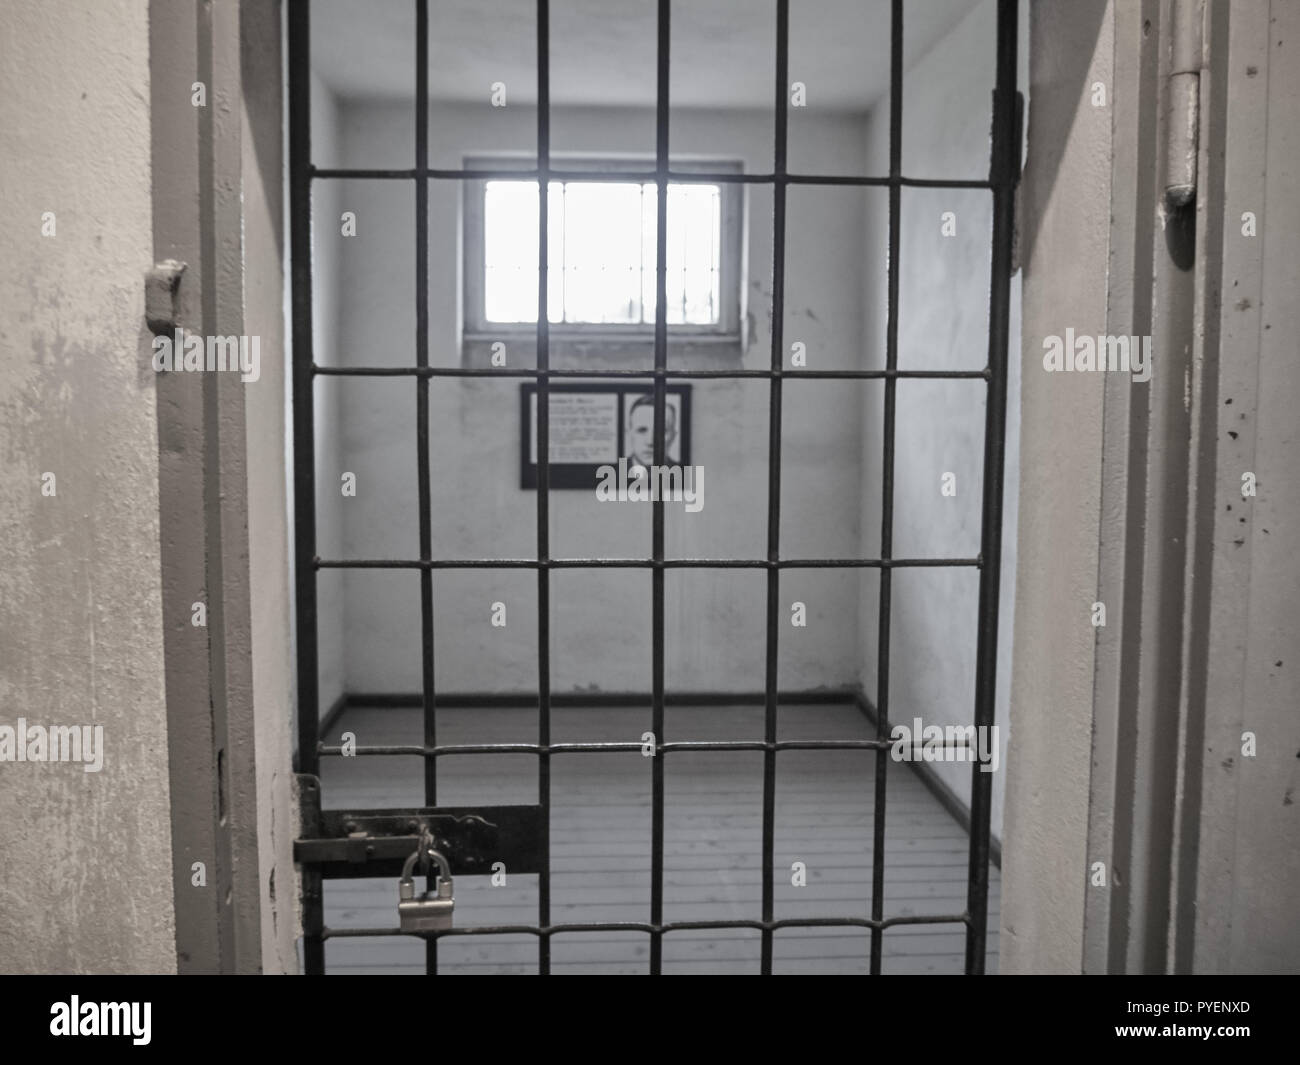 Orianenburg, Allemagne - 12 décembre 2017 : Avis d'une prison au camp de concentration de Sachsenhausen Banque D'Images